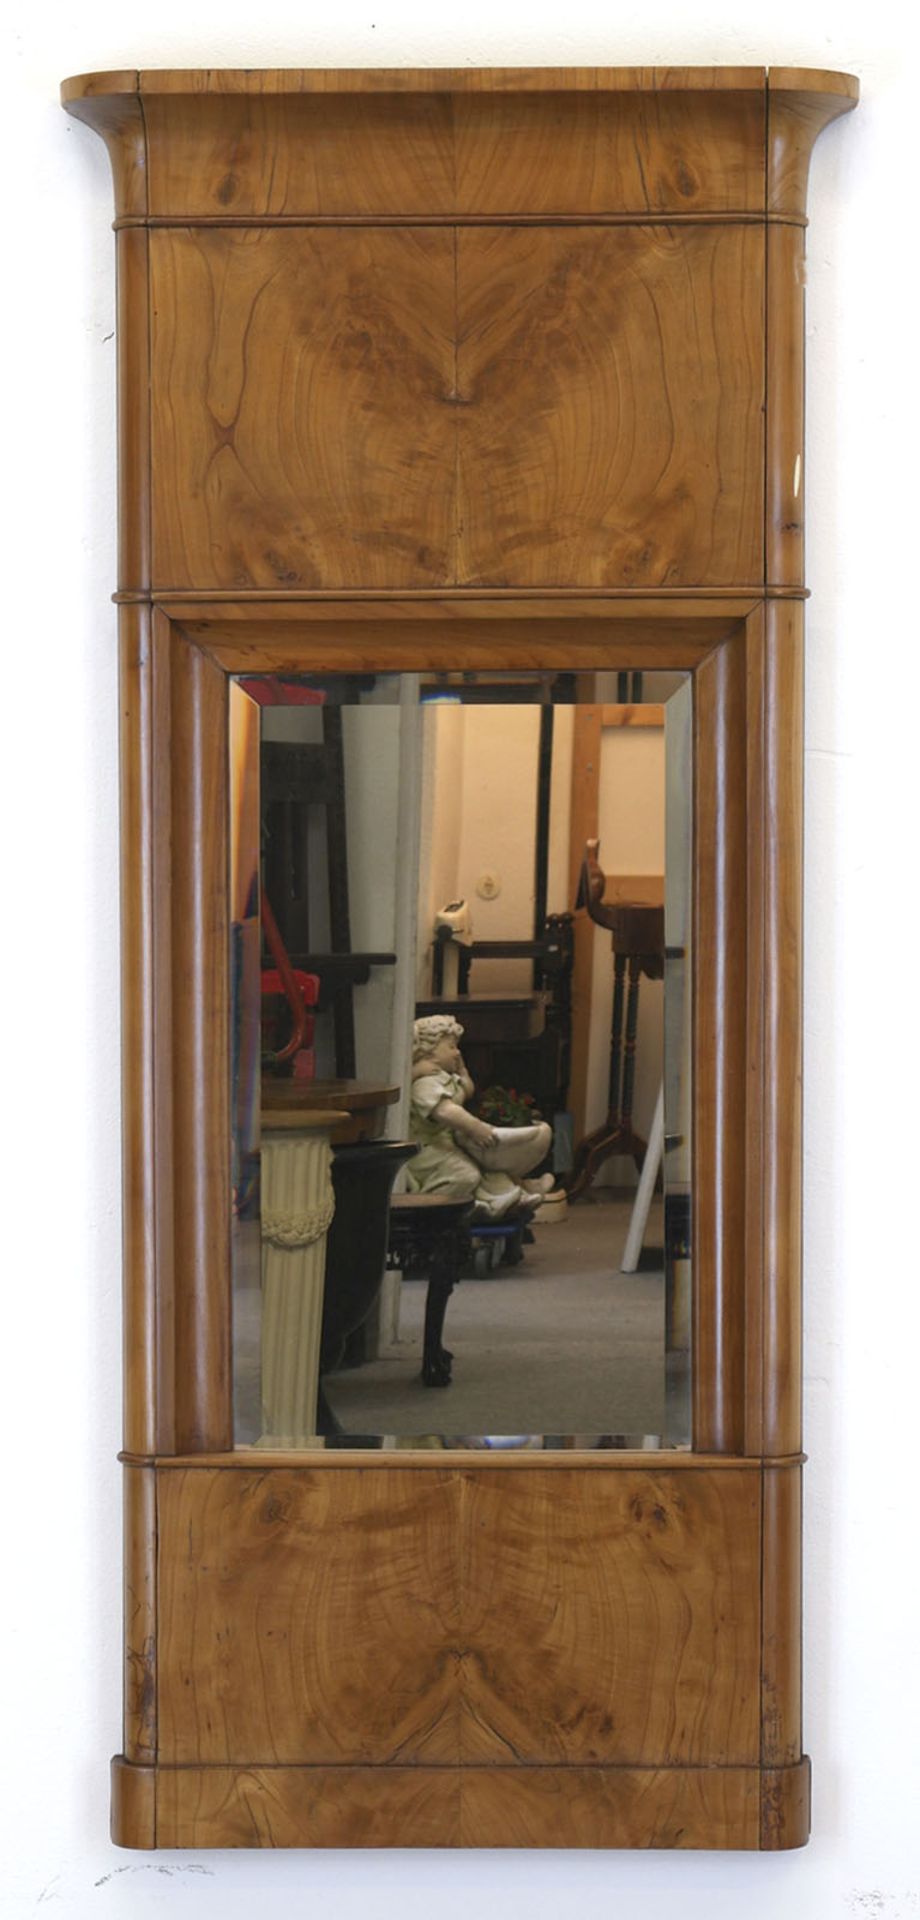 Biedermeier-Spiegel, Kirsche furniert, facettiertes Spiegelglas, Gebrauchspuren, 114x51x8 cm